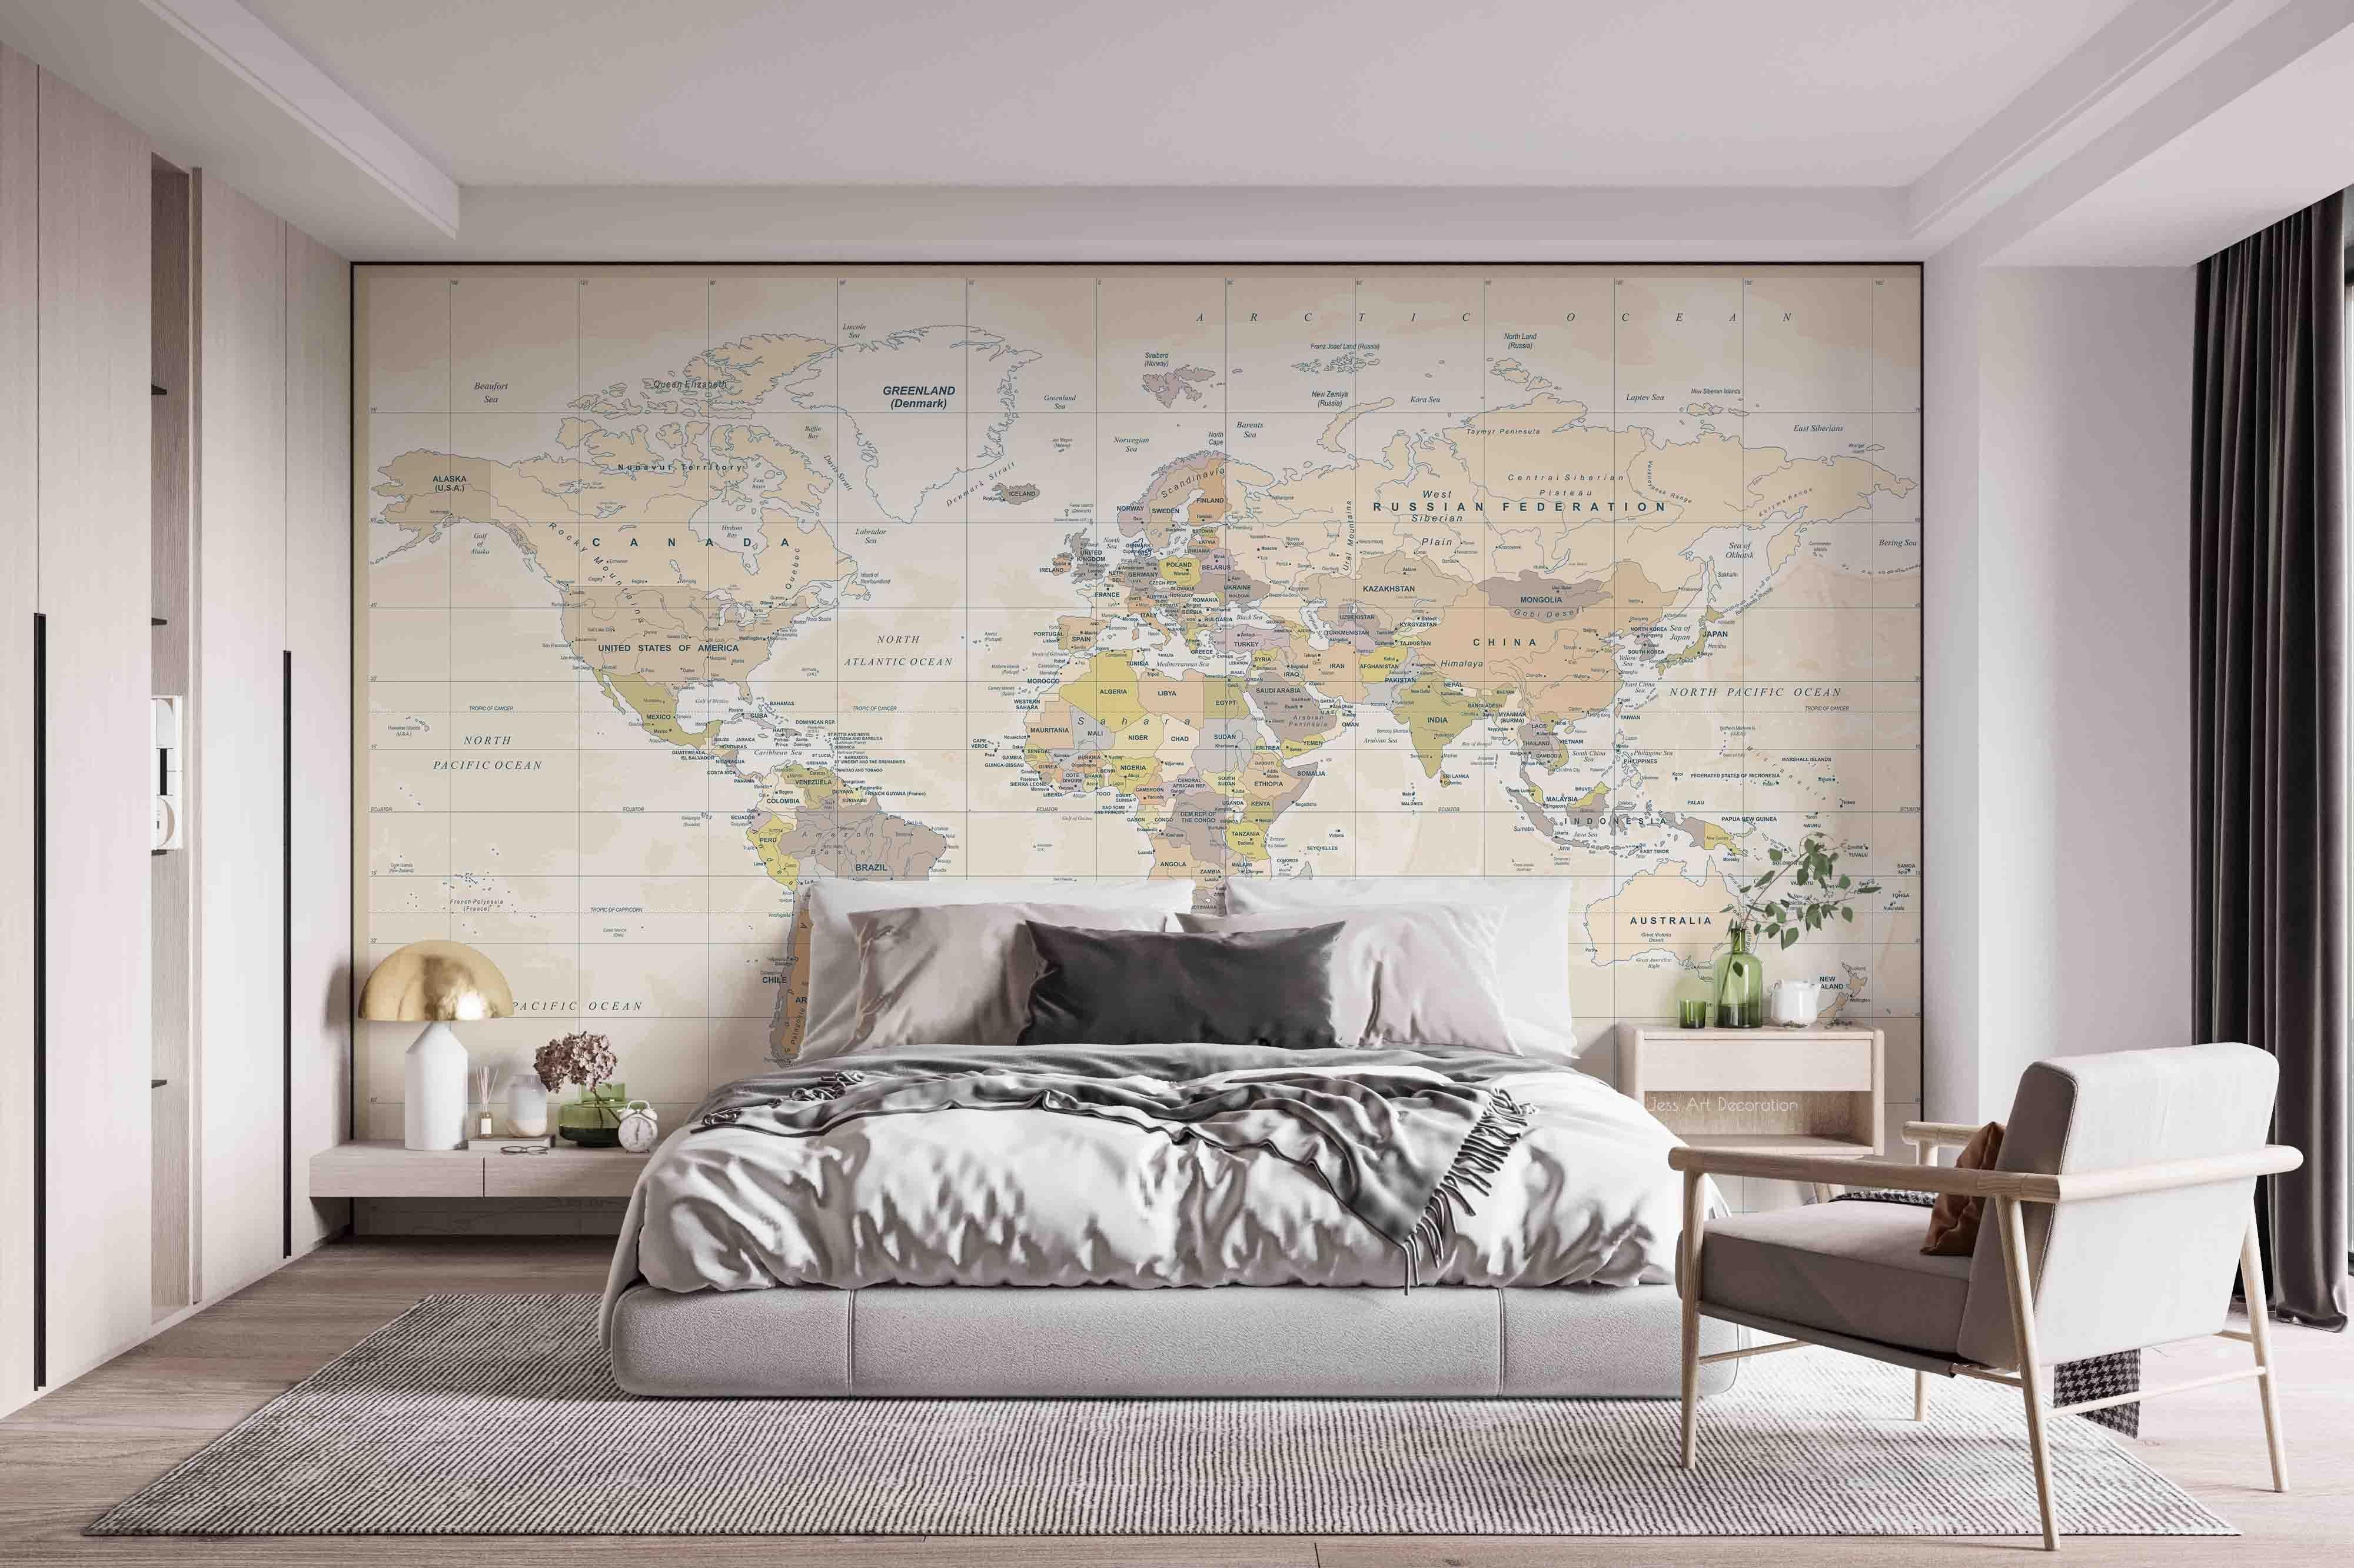 3D World Map Wall Mural Wallpaper GD 2536- Jess Art Decoration